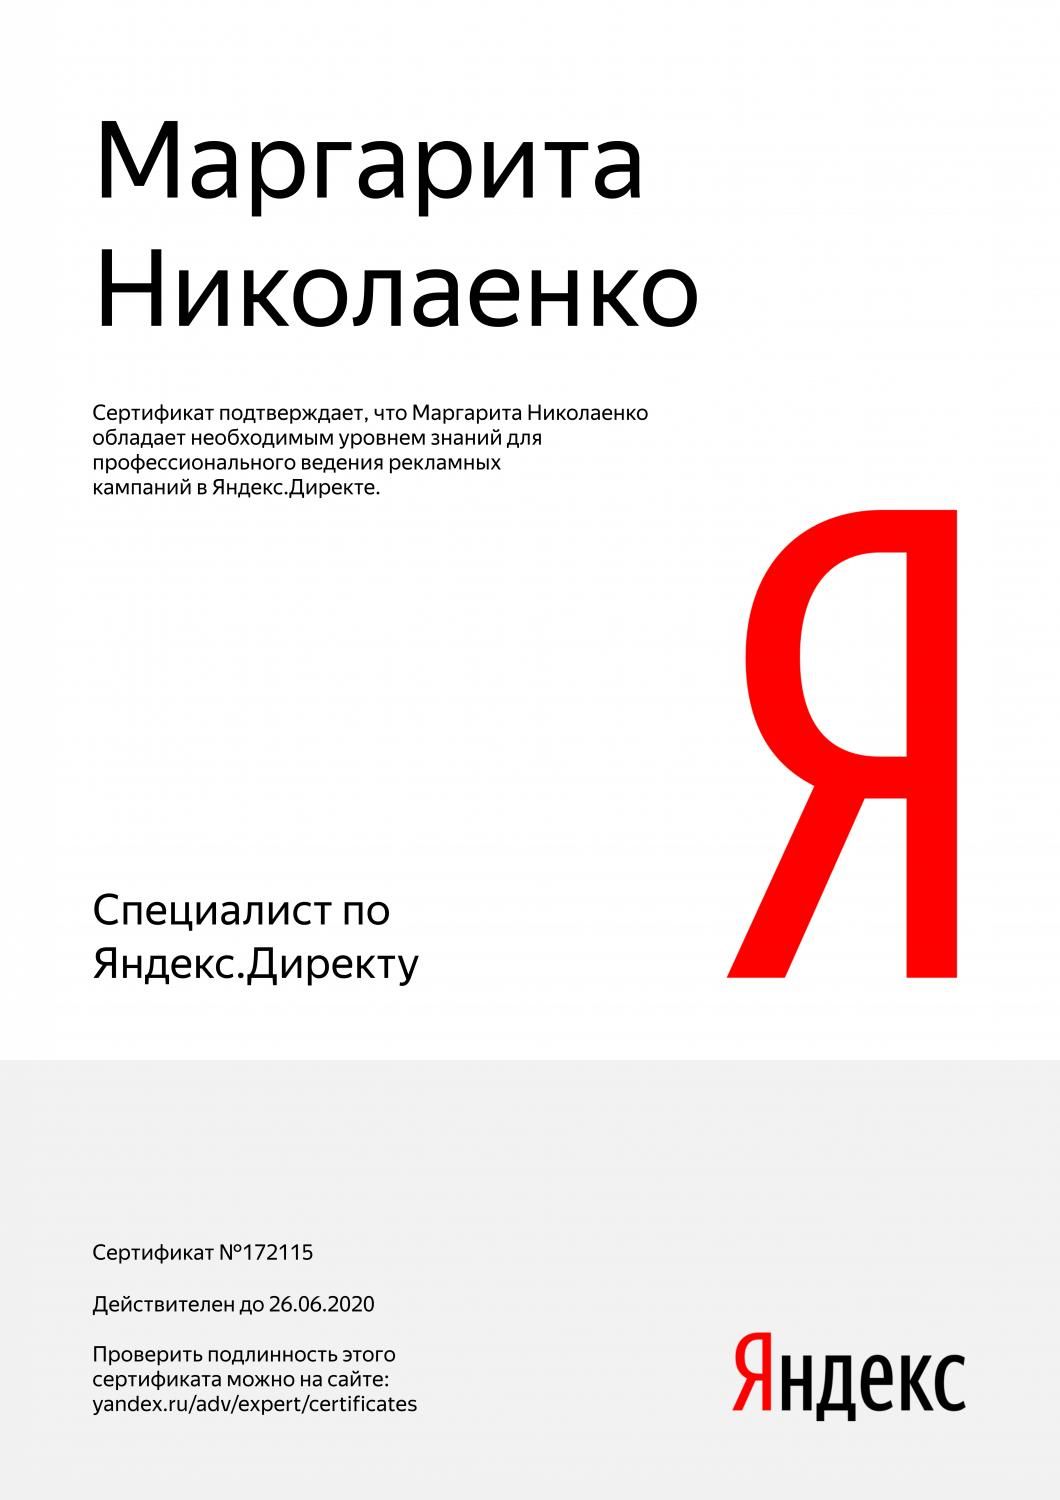 Сертификат специалиста Яндекс. Директ - Николаенко М. в Якутска